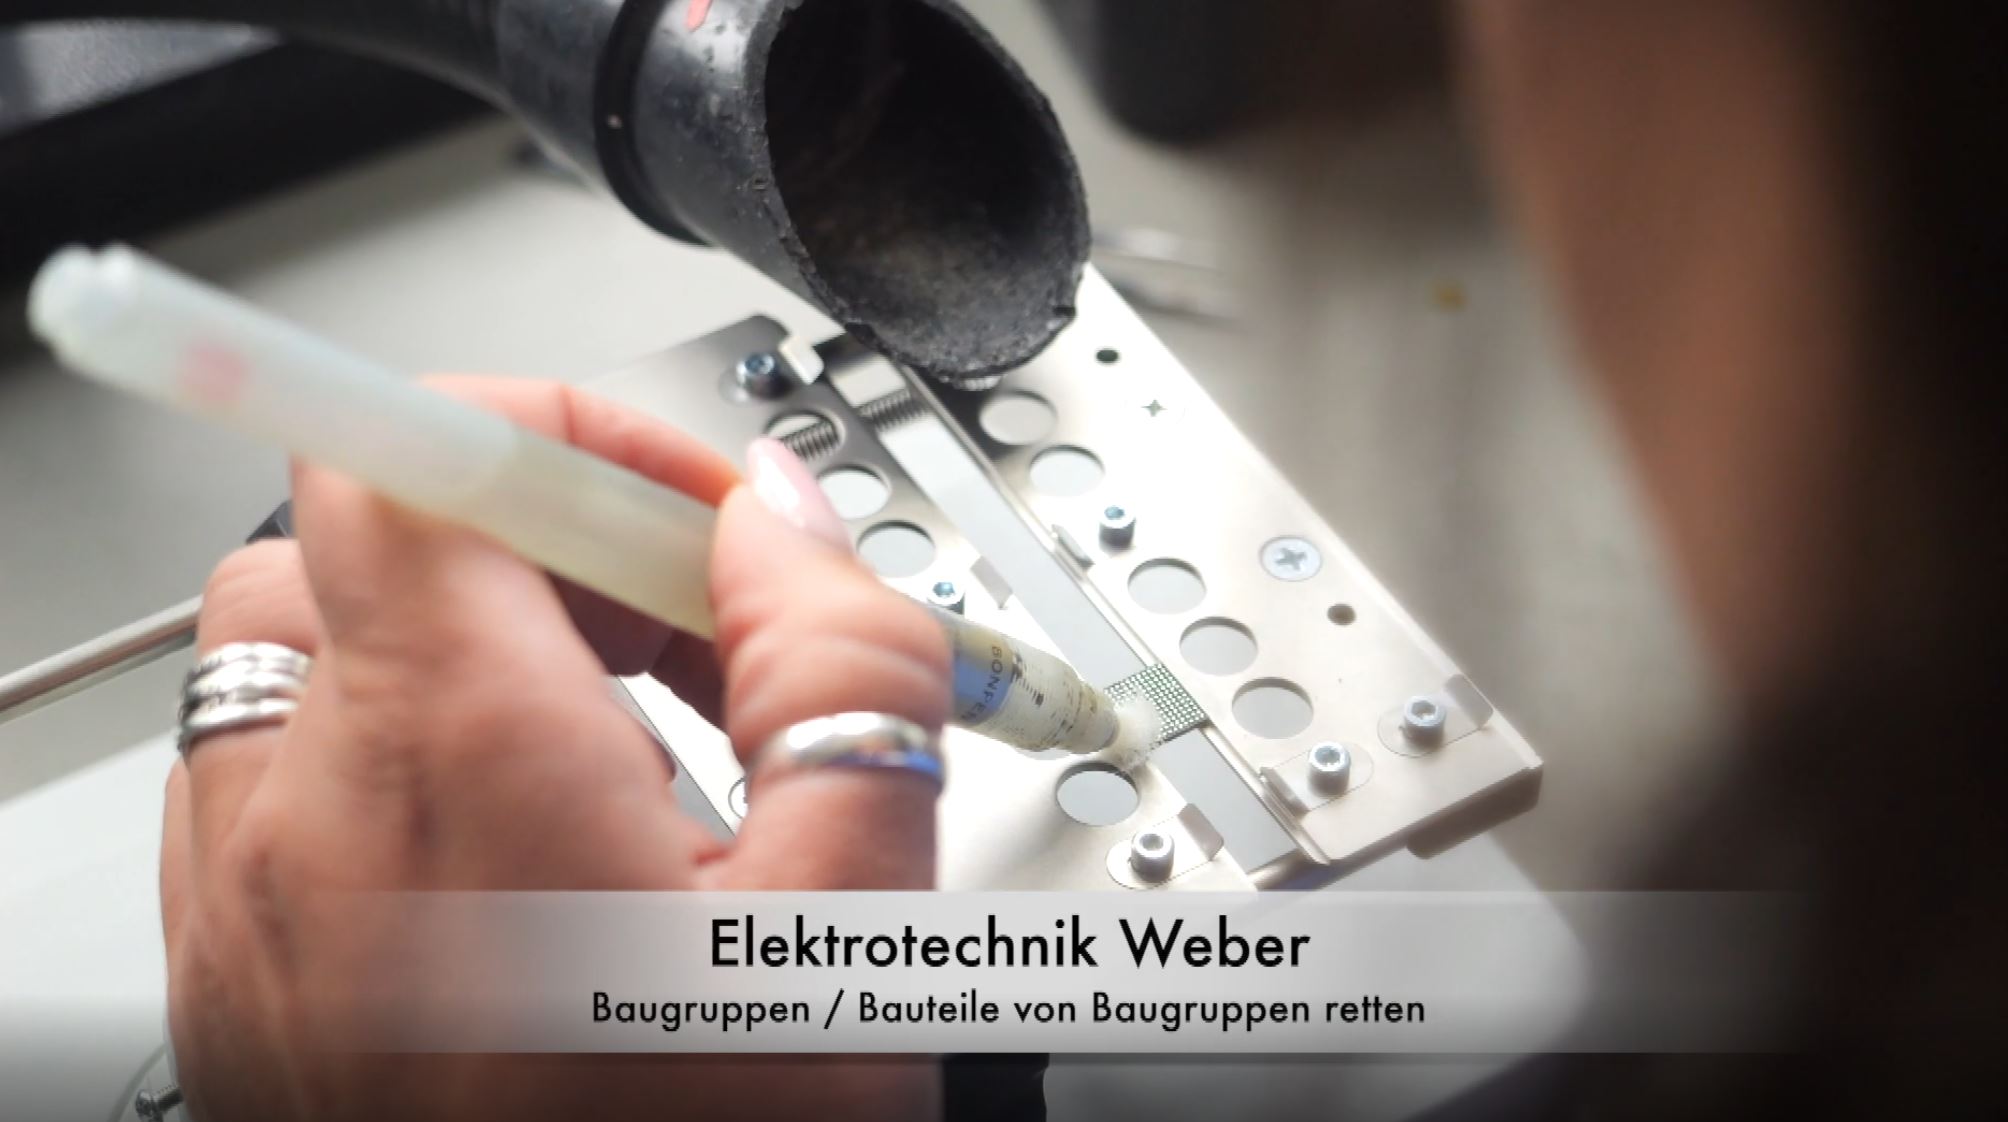 zur externen Seite: Elektrotechnik Weber | Baugruppen retten und CO2 einsparen - unter www.youtube.com